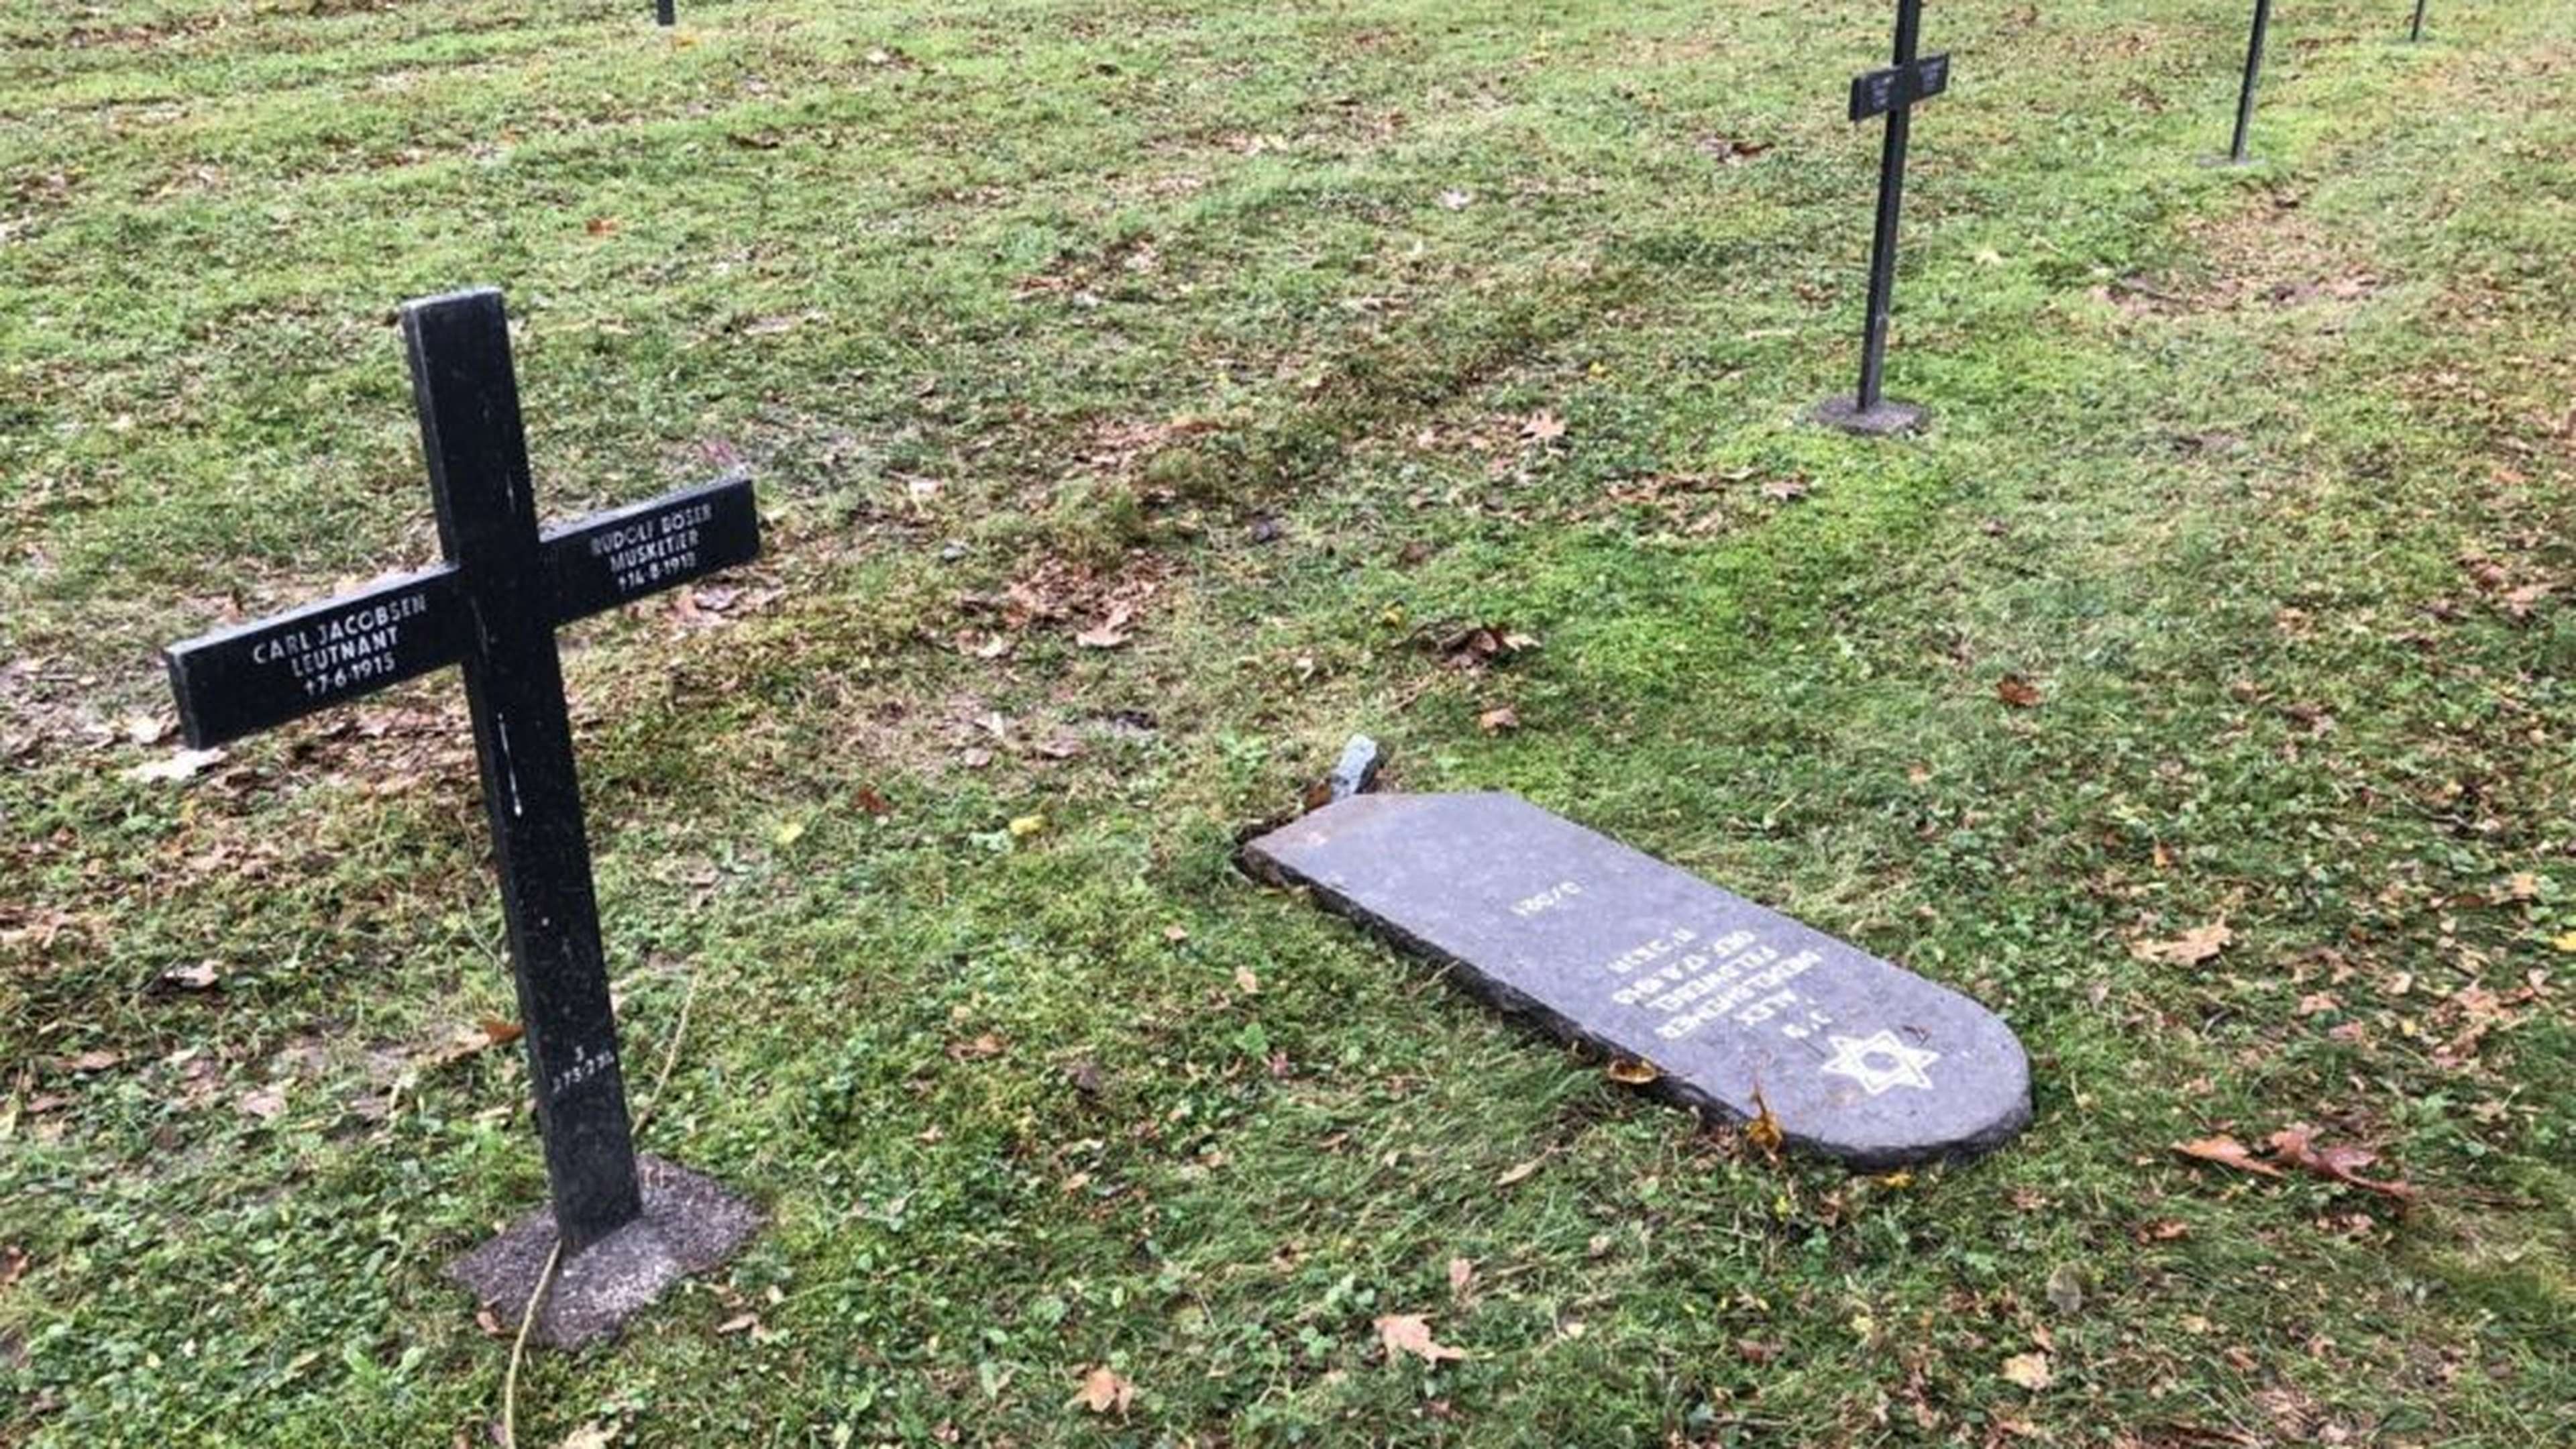 À Moulin-sous-Touvent dans l’Oise, une dizaine de stèles juives ont été détruites dans le cimetière militaire de la commune. Elles ont été retrouvées dans cet état ce mercredi. (©Association des Souterrains Allemands de Puisaleine et des Environs 14-18 / Facebook)